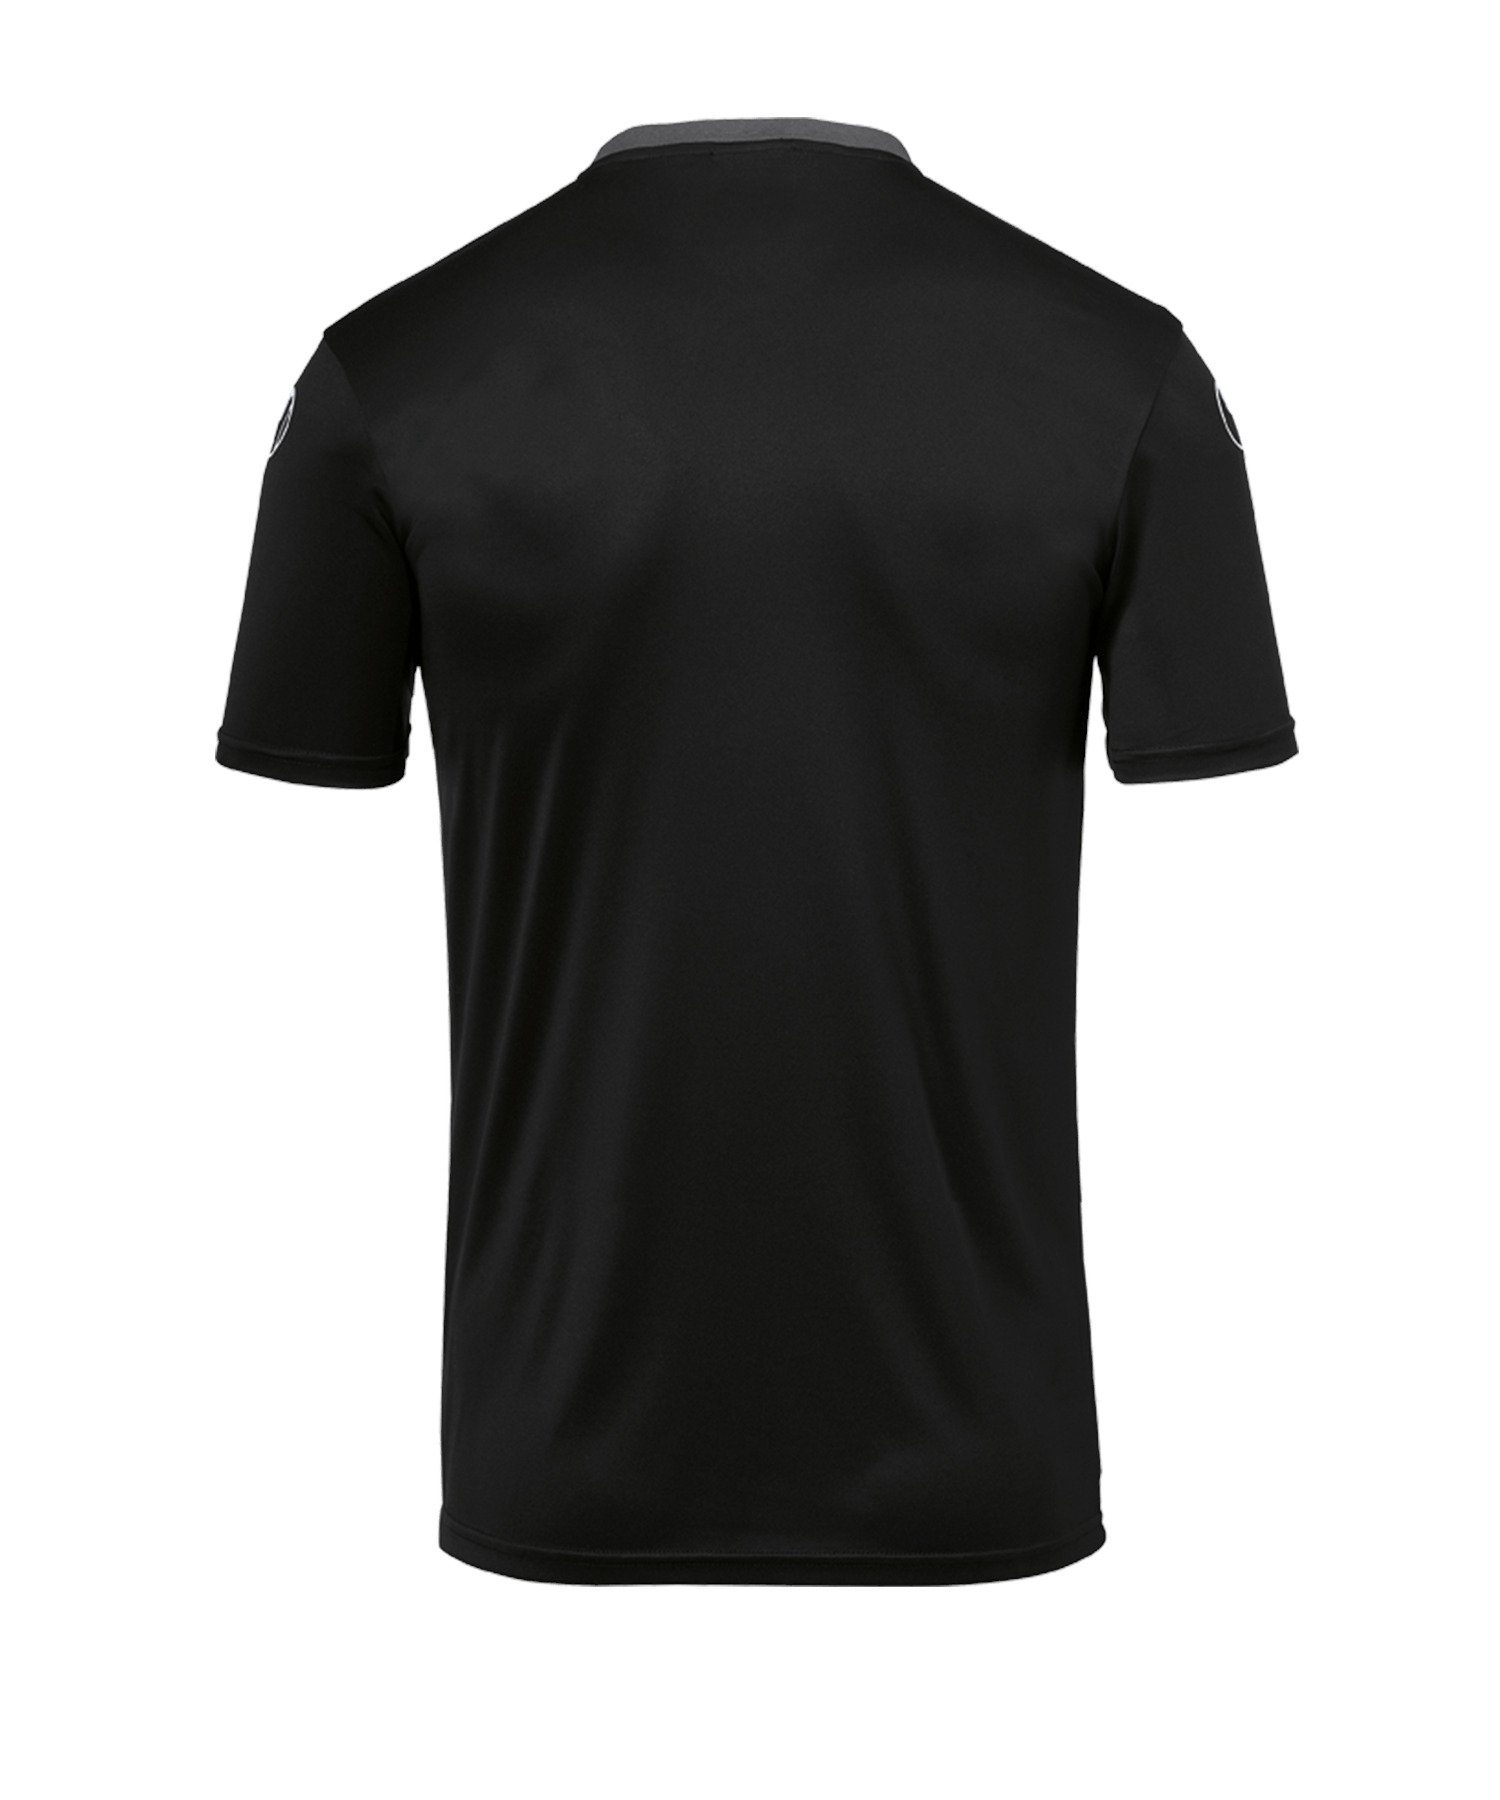 default schwarzgrau T-Shirt Trainingsshirt 23 Offense uhlsport